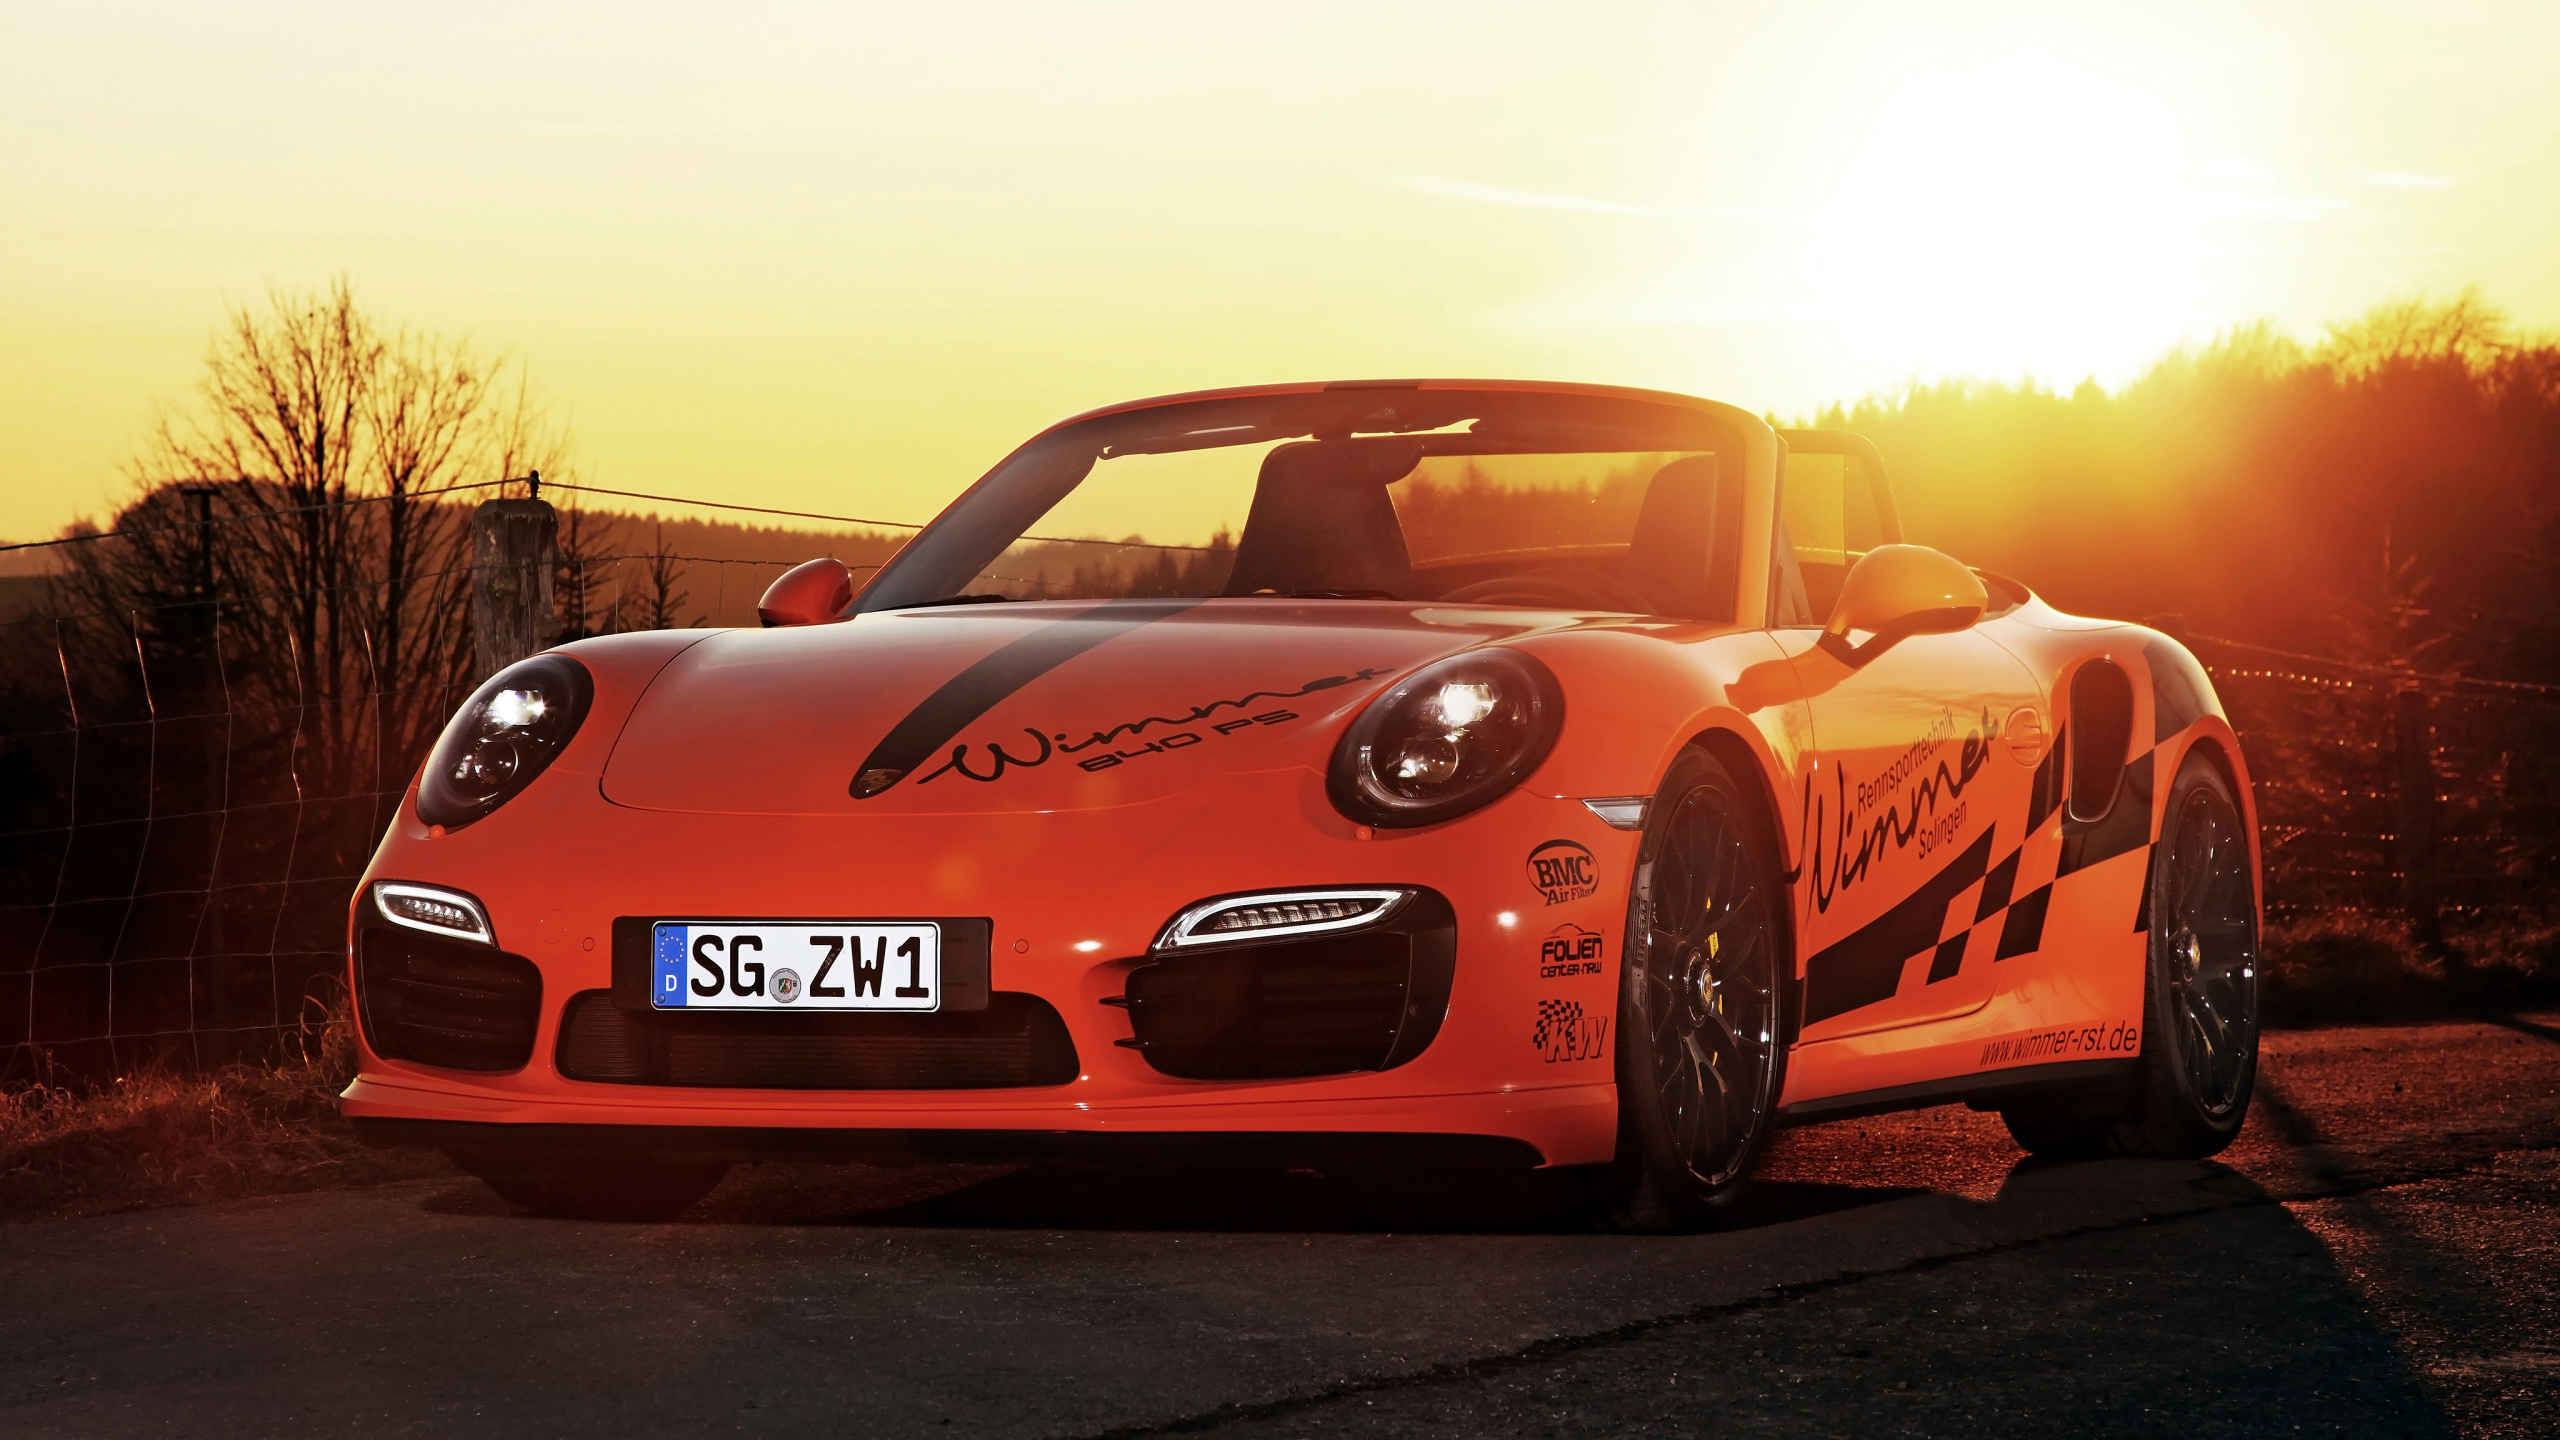 Porsche 911 Rouge Sur Route Pendant la Journée. Wallpaper in 2560x1440 Resolution